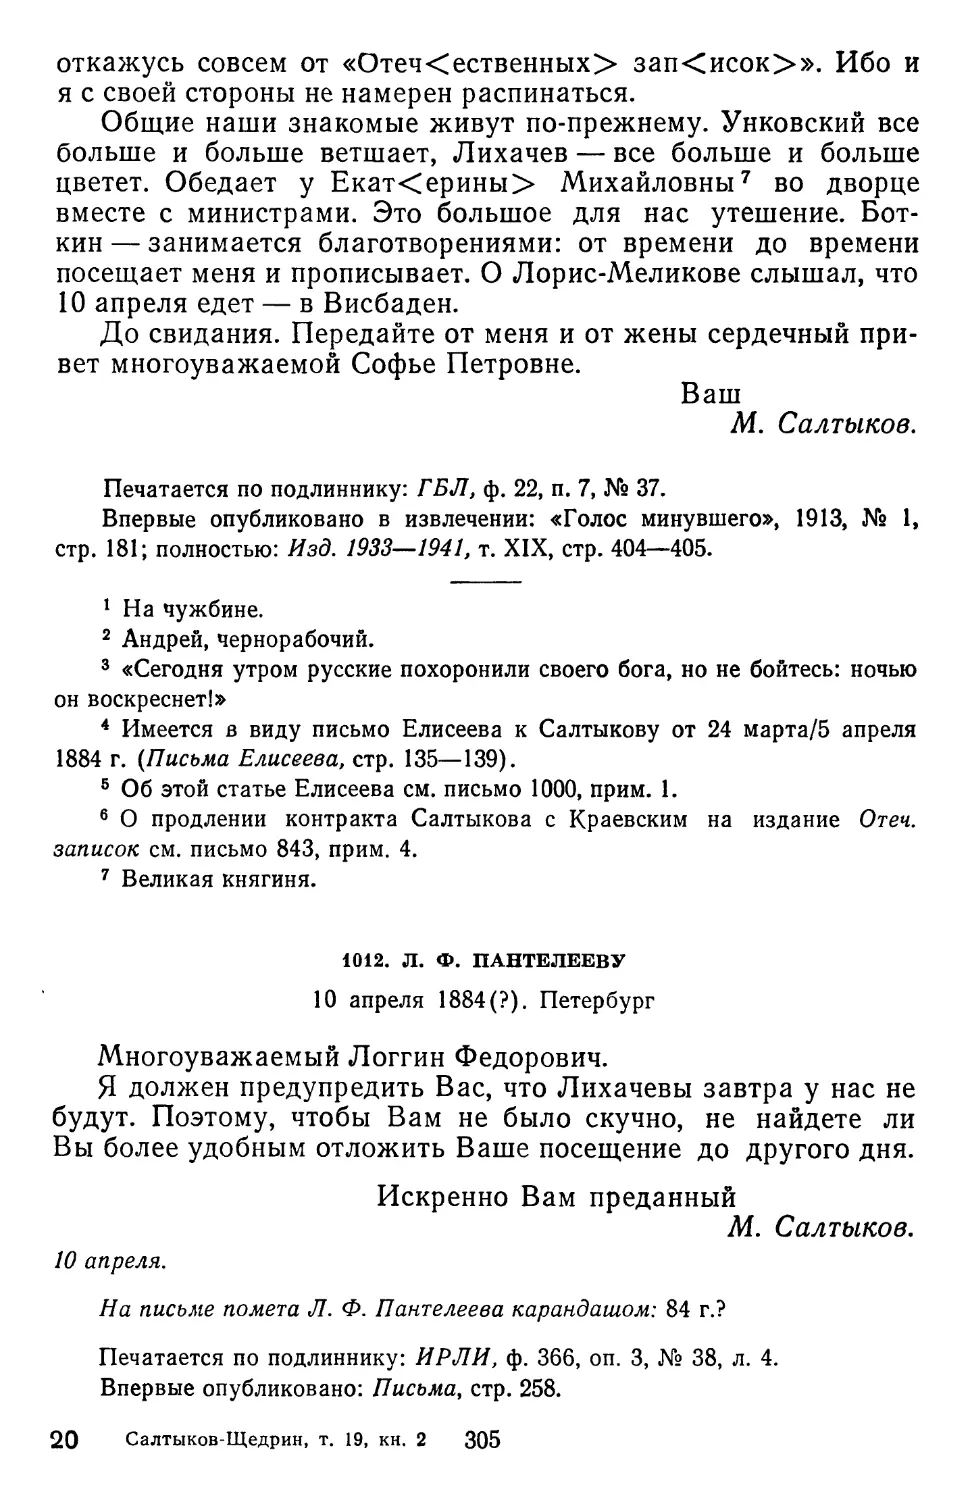 1012.Л.Ф. Пантелееву. 10 апреля 1884. Петербург